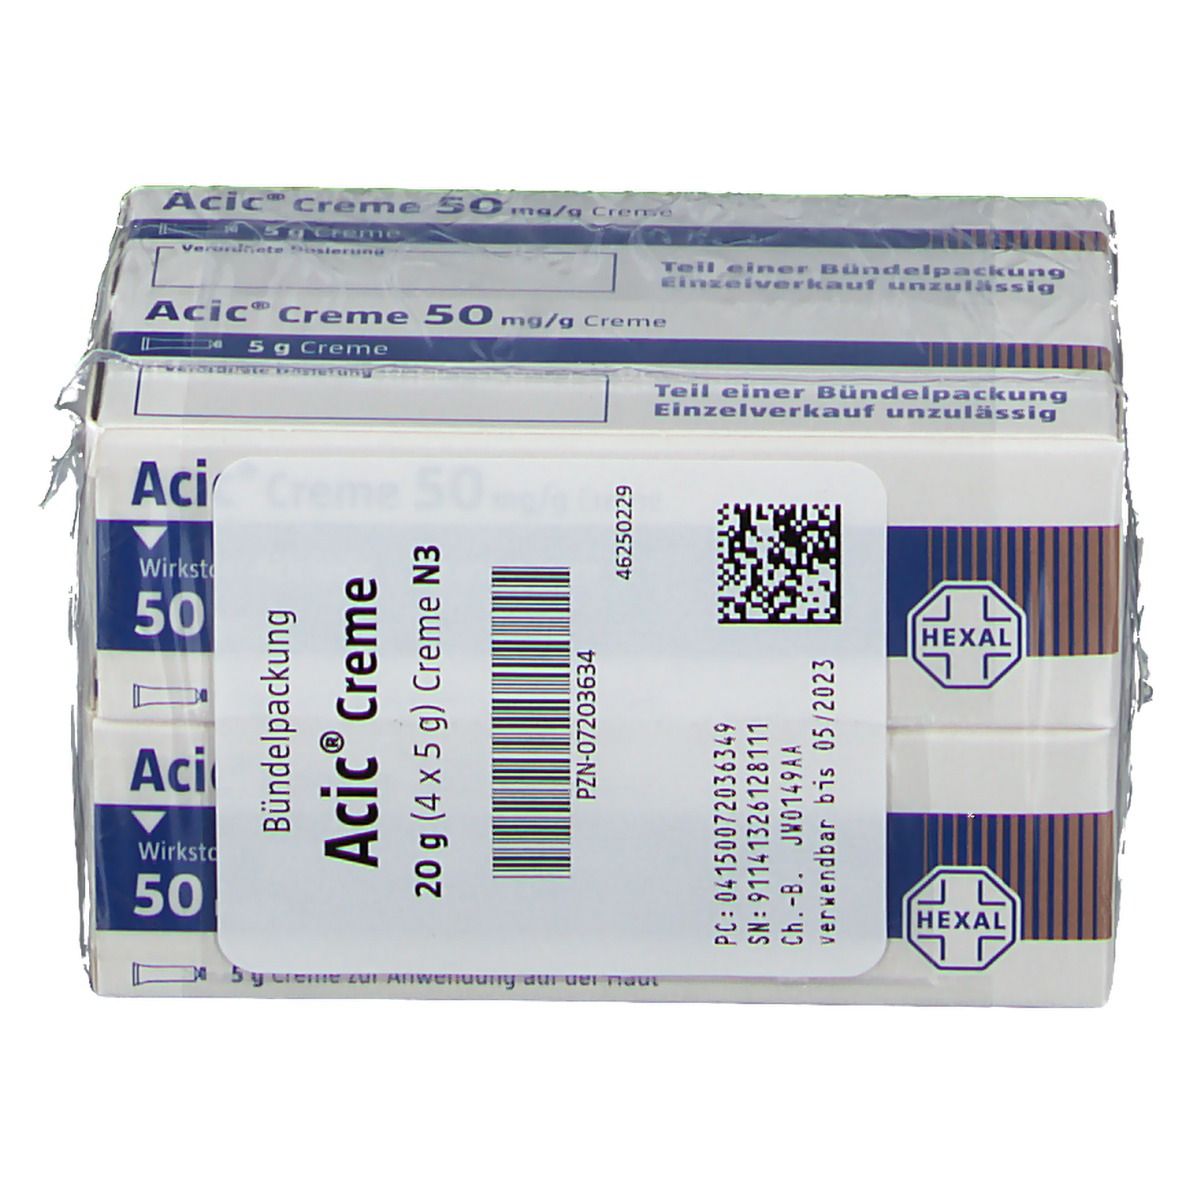 Acic® Creme 50 mg/g